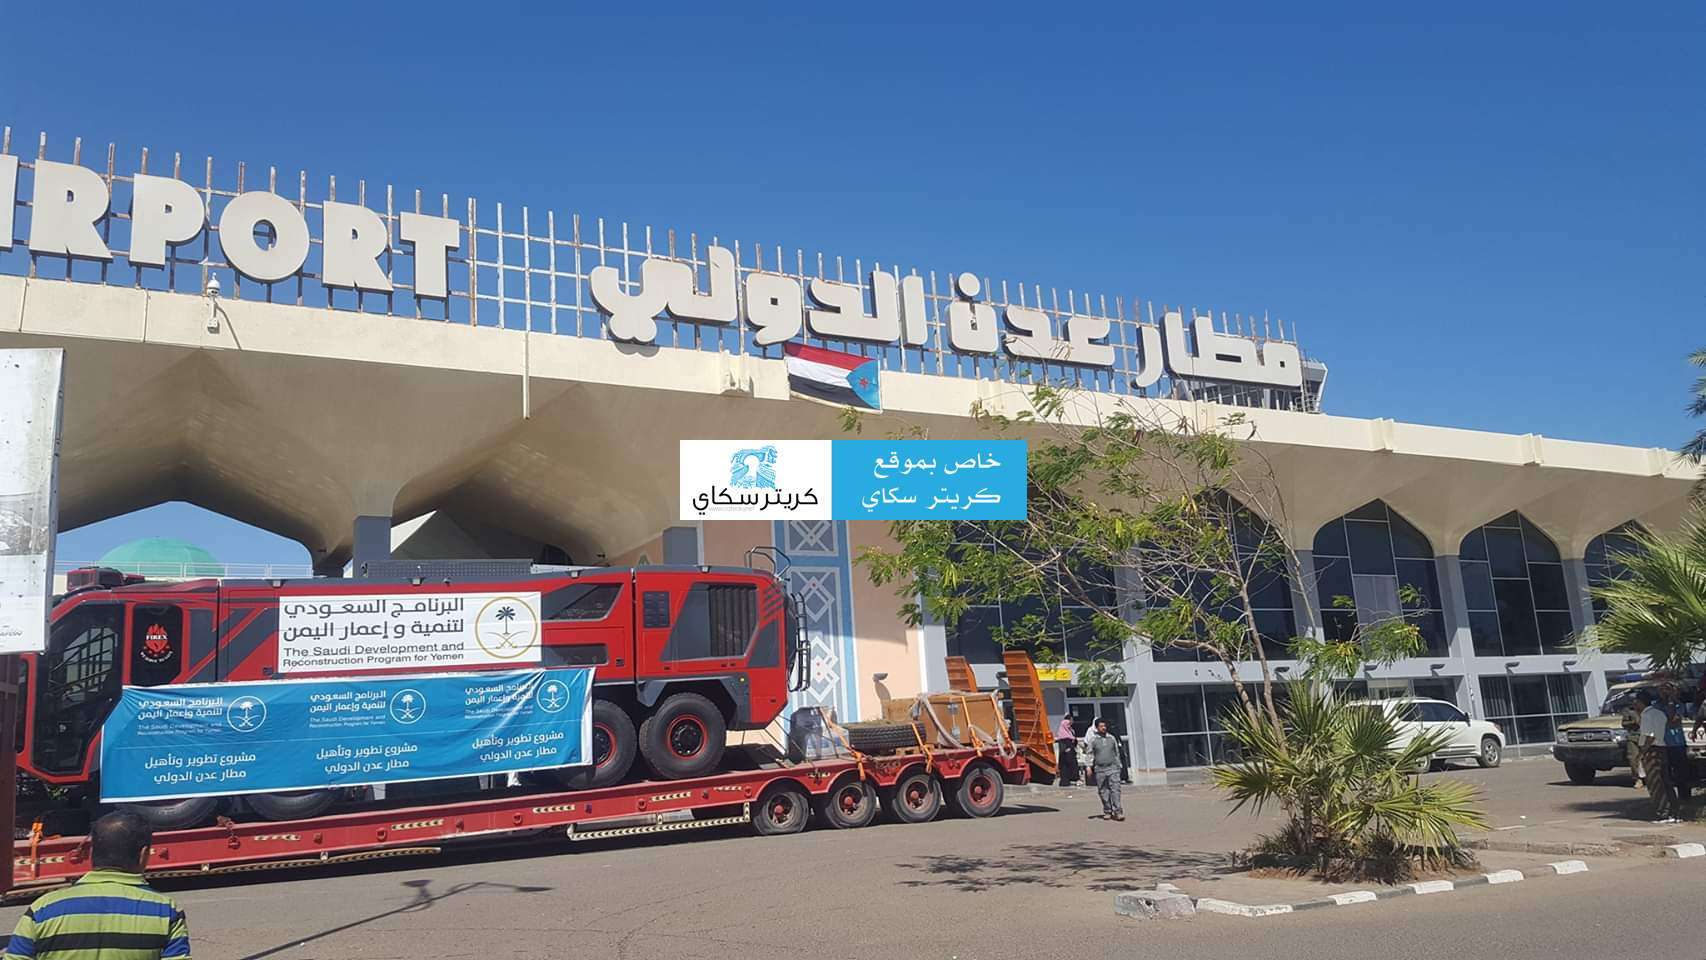 وصول جثمان وزير يمني سابق إلى مطار عدن